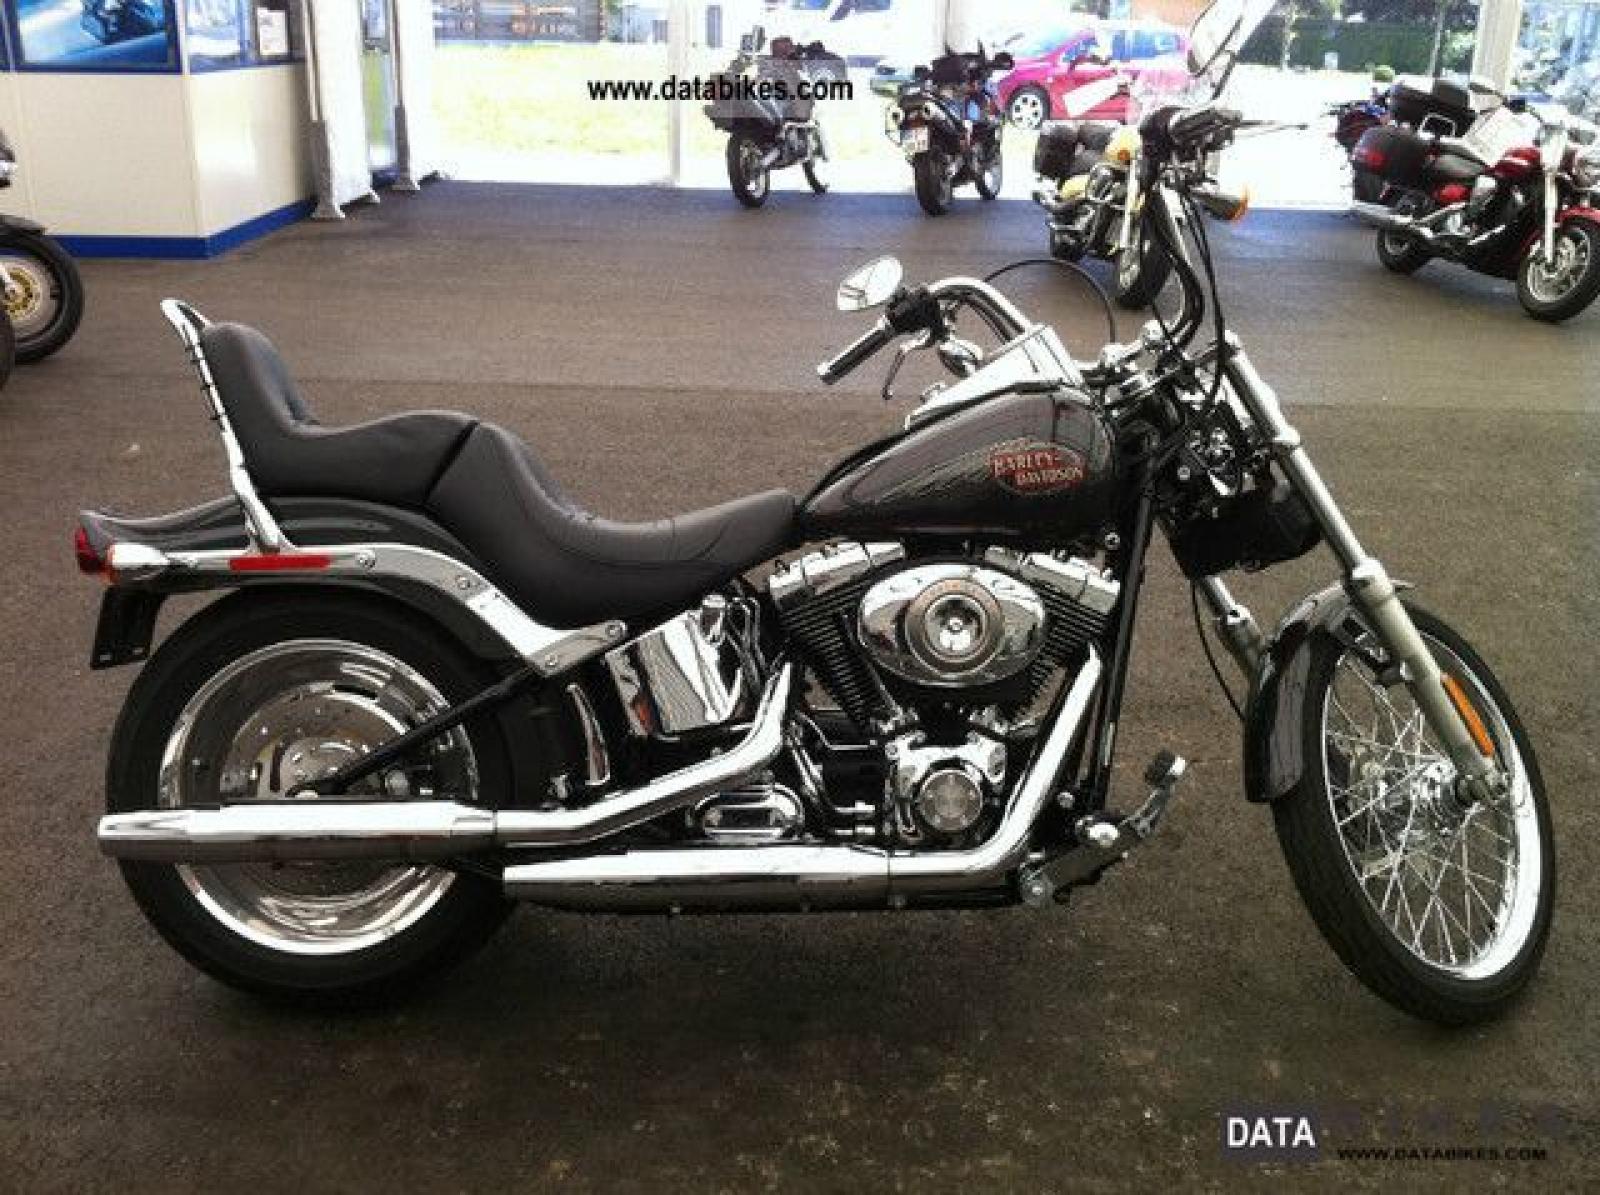 2009 Harley Davidson Flstc Promotion Off69